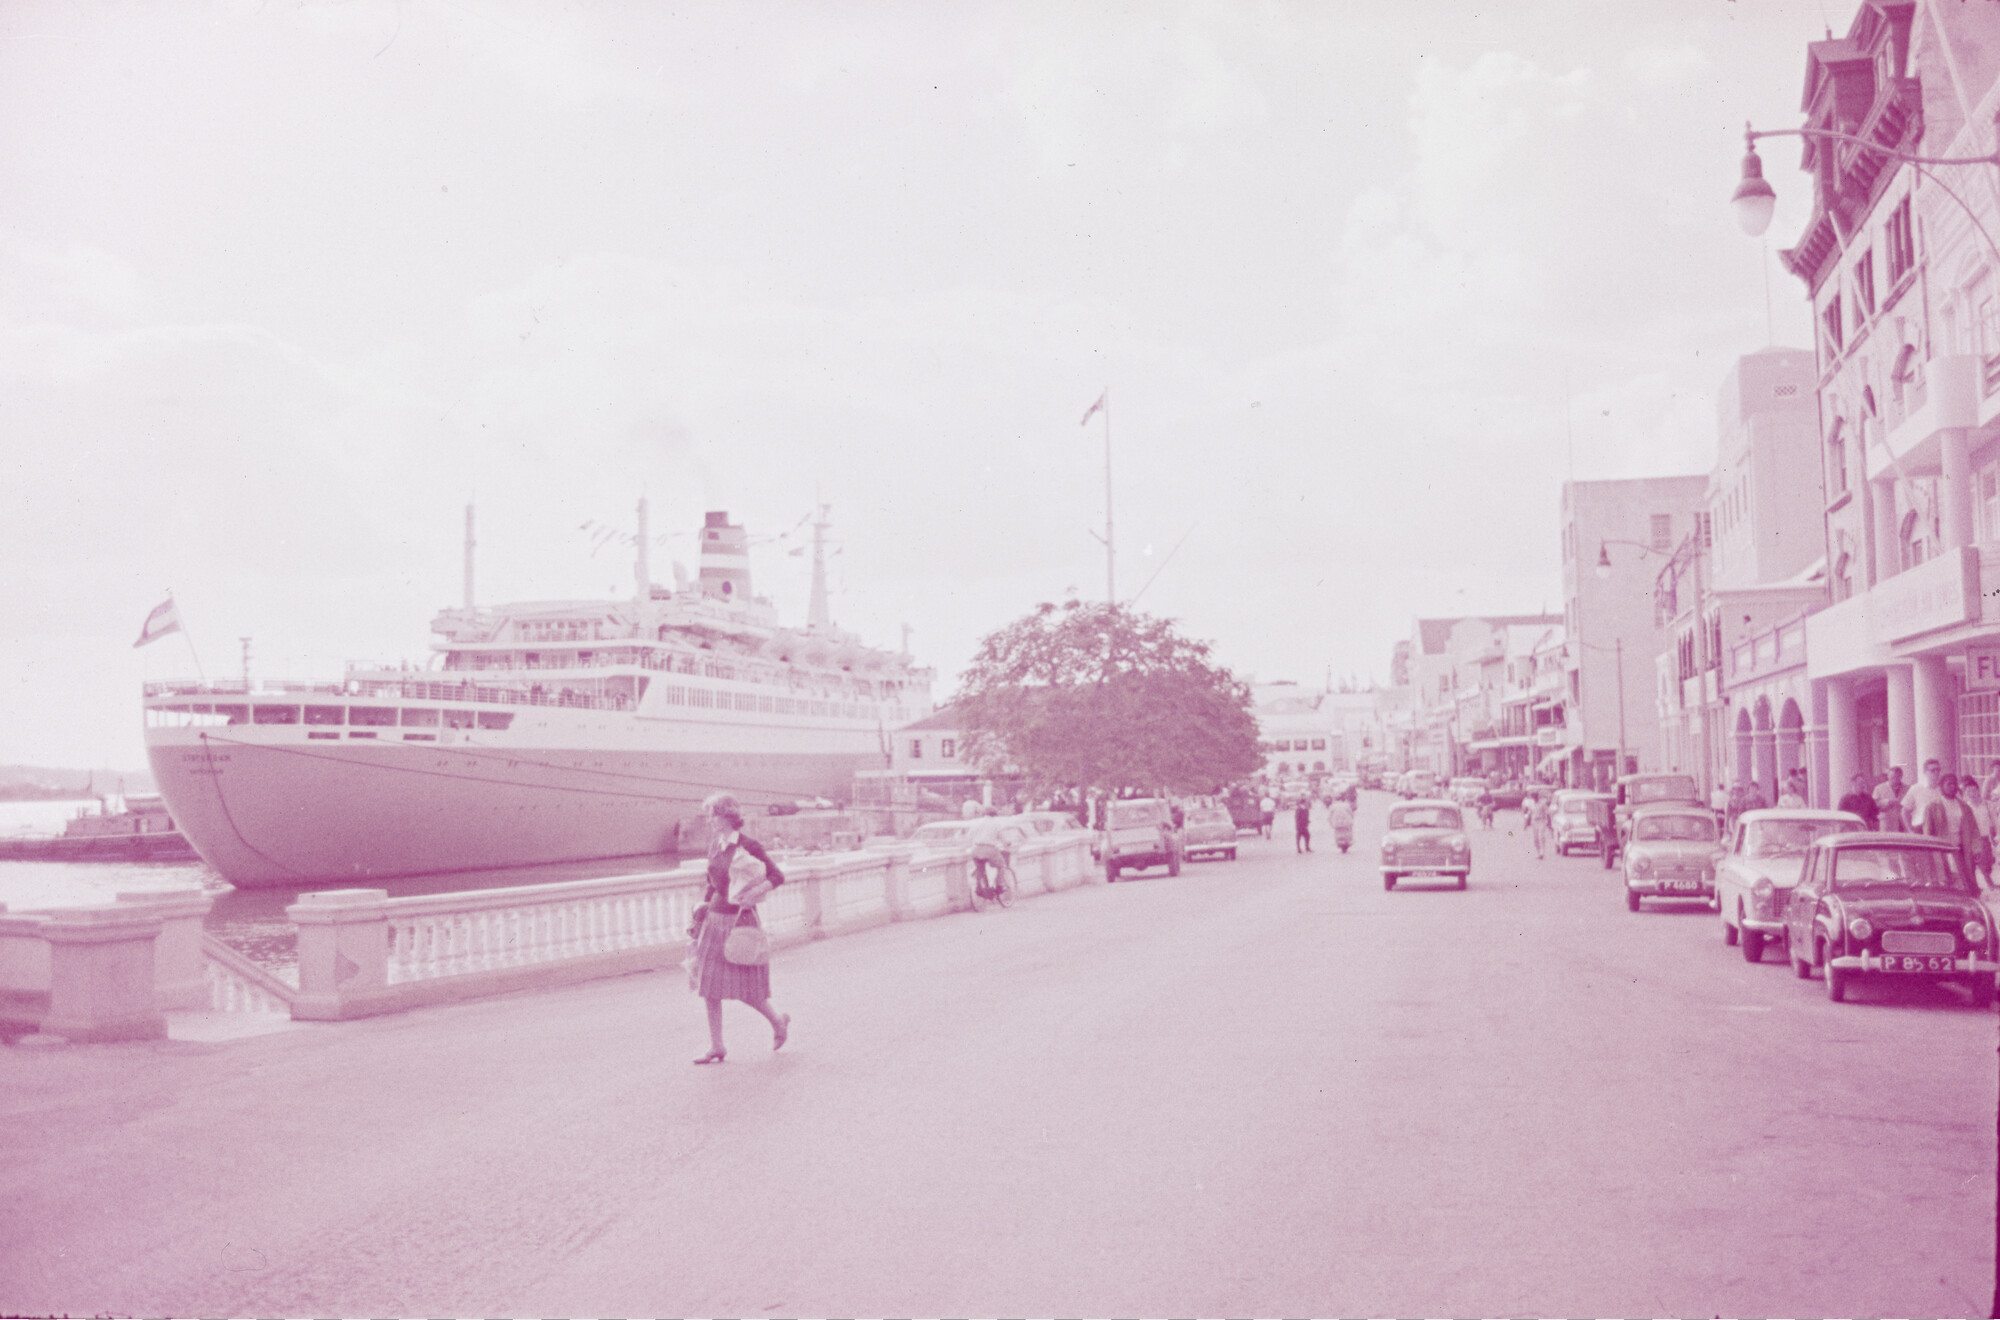 2015.0437; Dia van ms. Statendam in de haven van Bermuda; diapositief